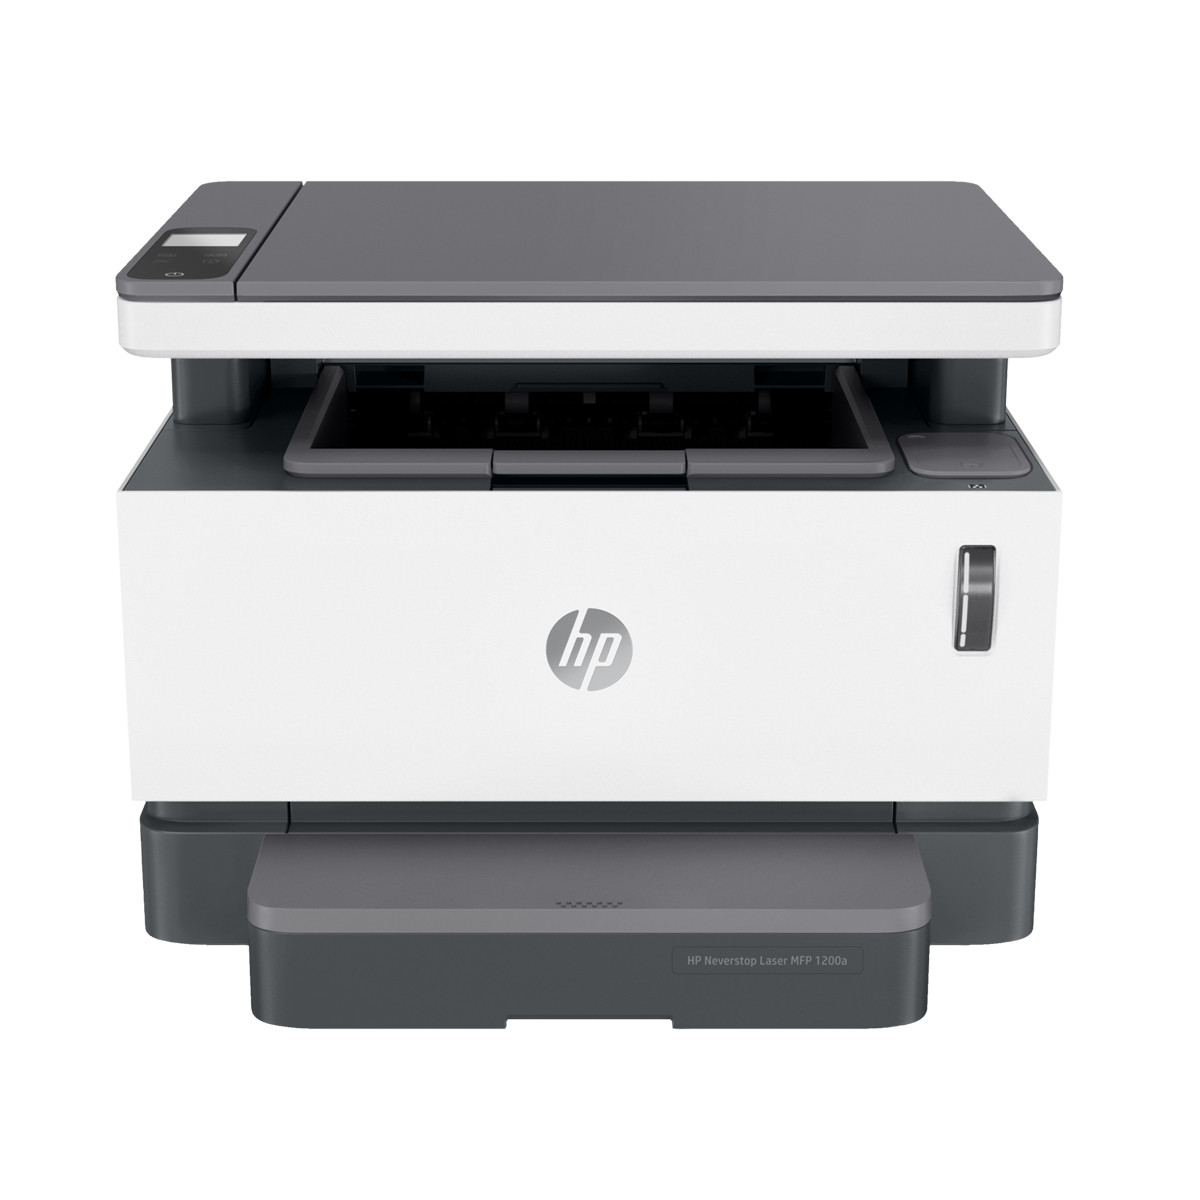 Impressora HP Neverstop 1200A 4QD21A Multifuncional com Conexão USB